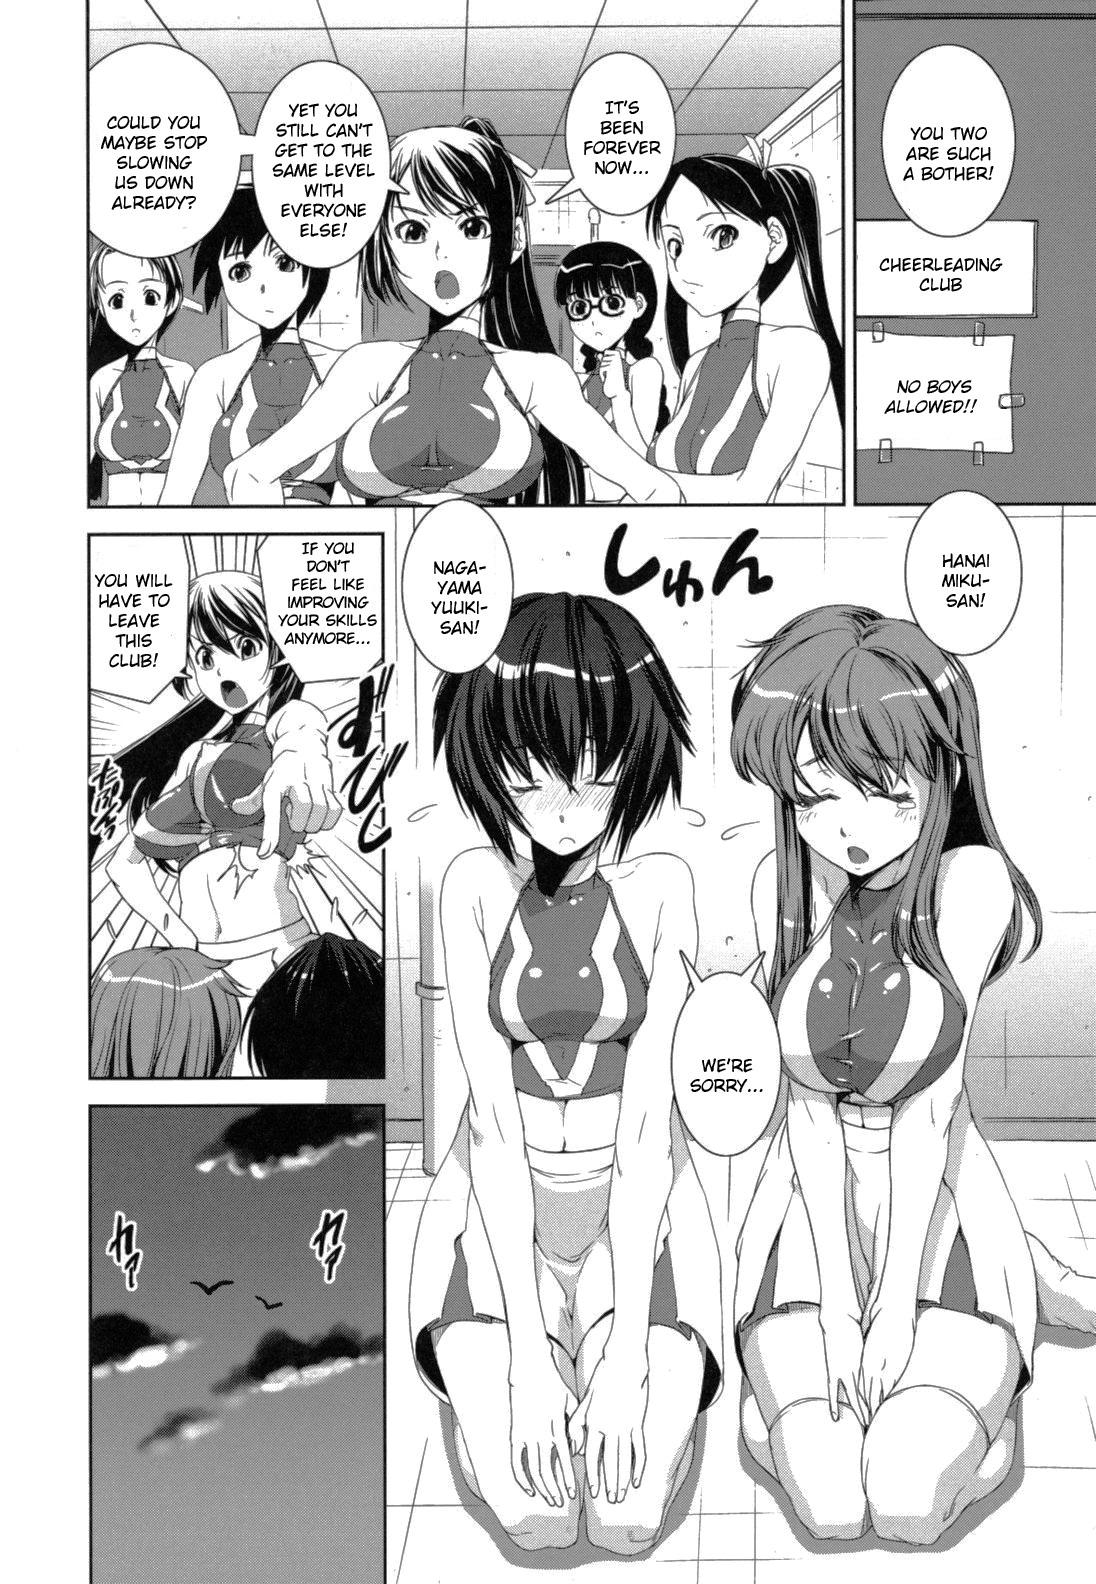 Little Kongou Cheer-bu! Underwear - Page 7